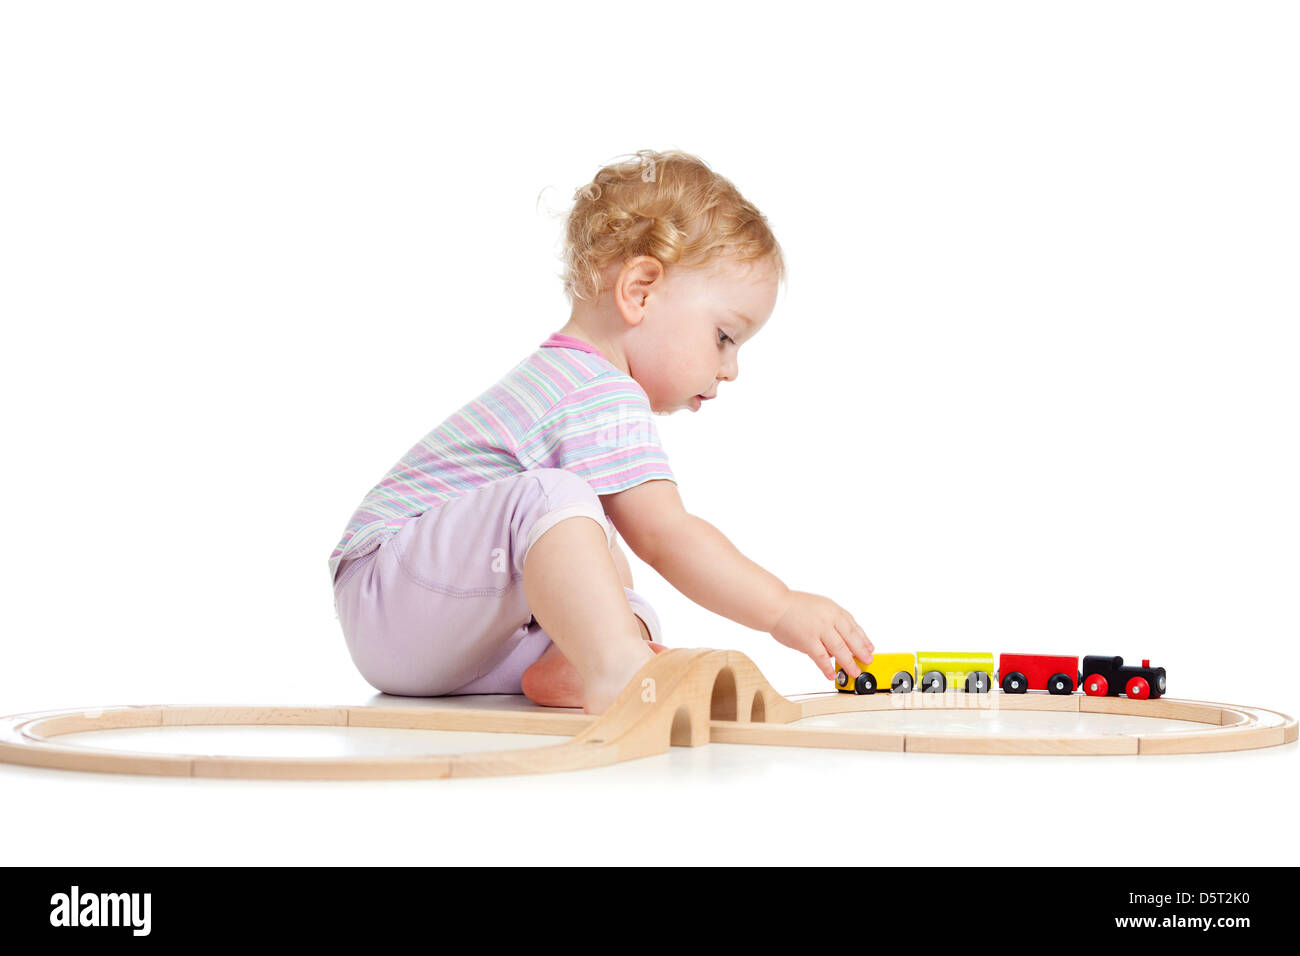 Cute child joue avec train en bois isolé sur blanc Banque D'Images